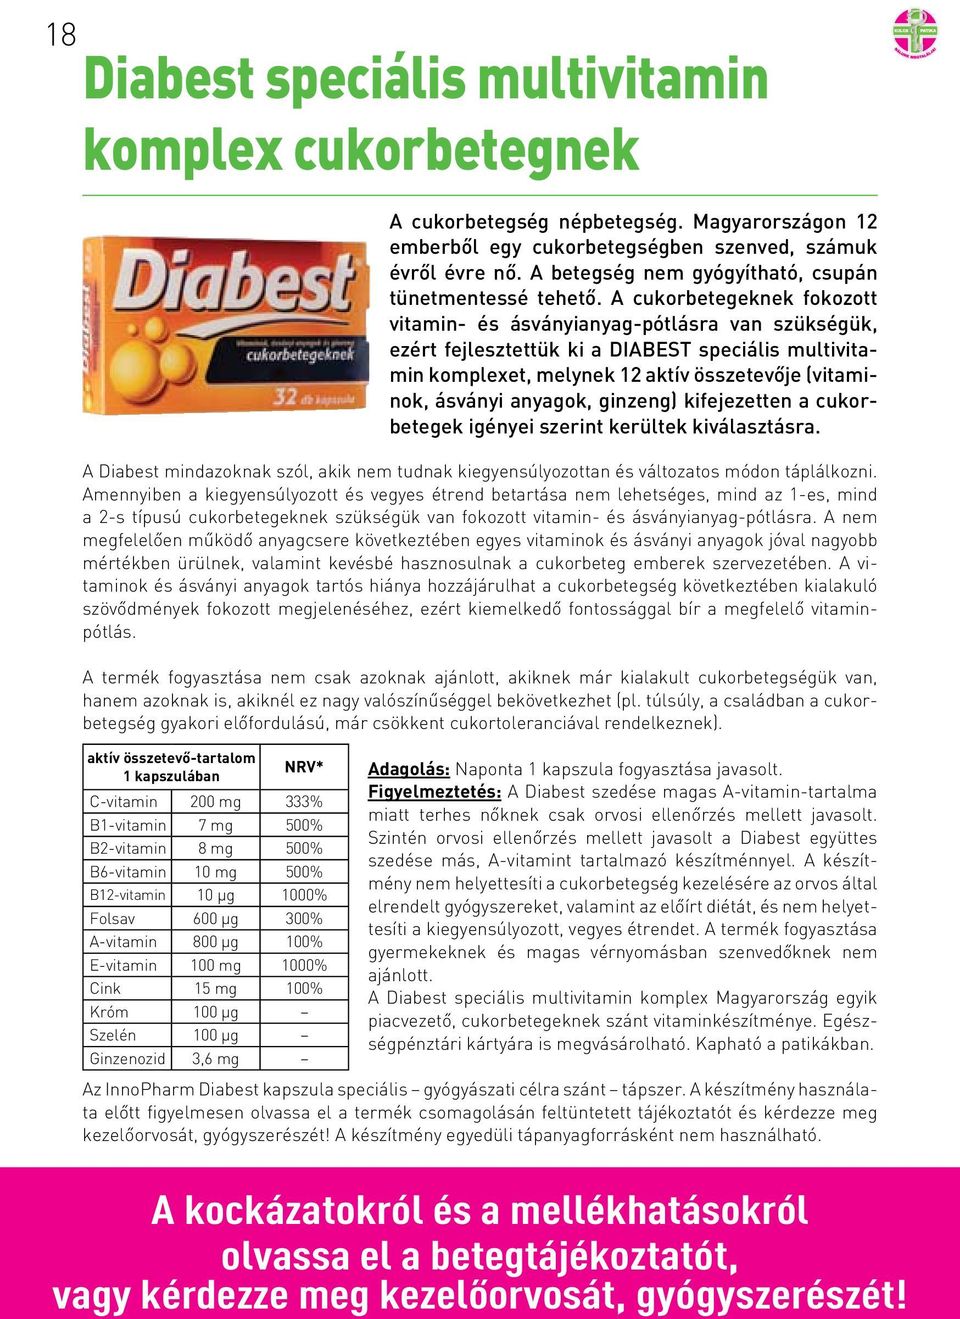 A cukorbetegeknek fokozott vitamin- és ásványianyag-pótlásra van szükségük, ezért fejlesztettük ki a DIABEST speciális multivitamin komplexet, melynek 12 aktív összetevője (vitaminok, ásványi